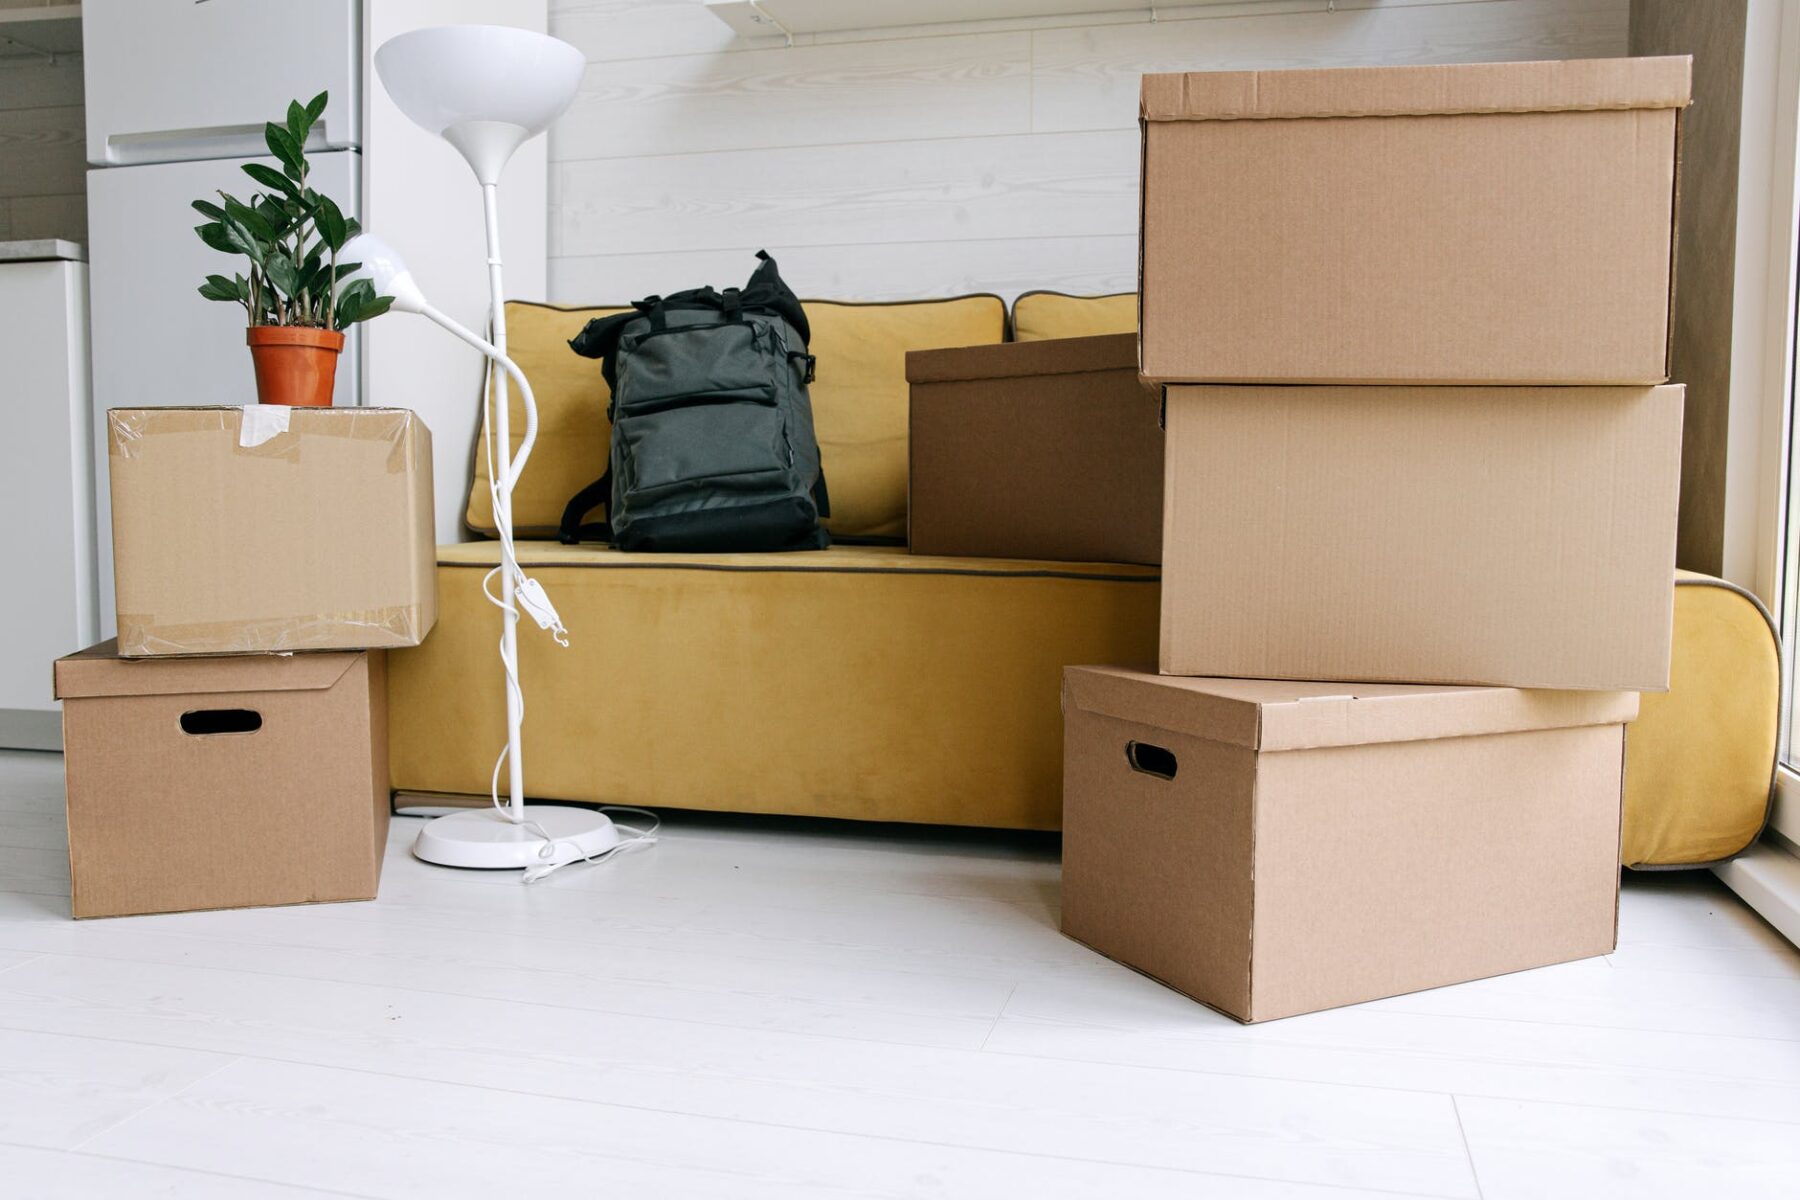 Как упаковать вещи, чтобы после переезда быстро найти нужное